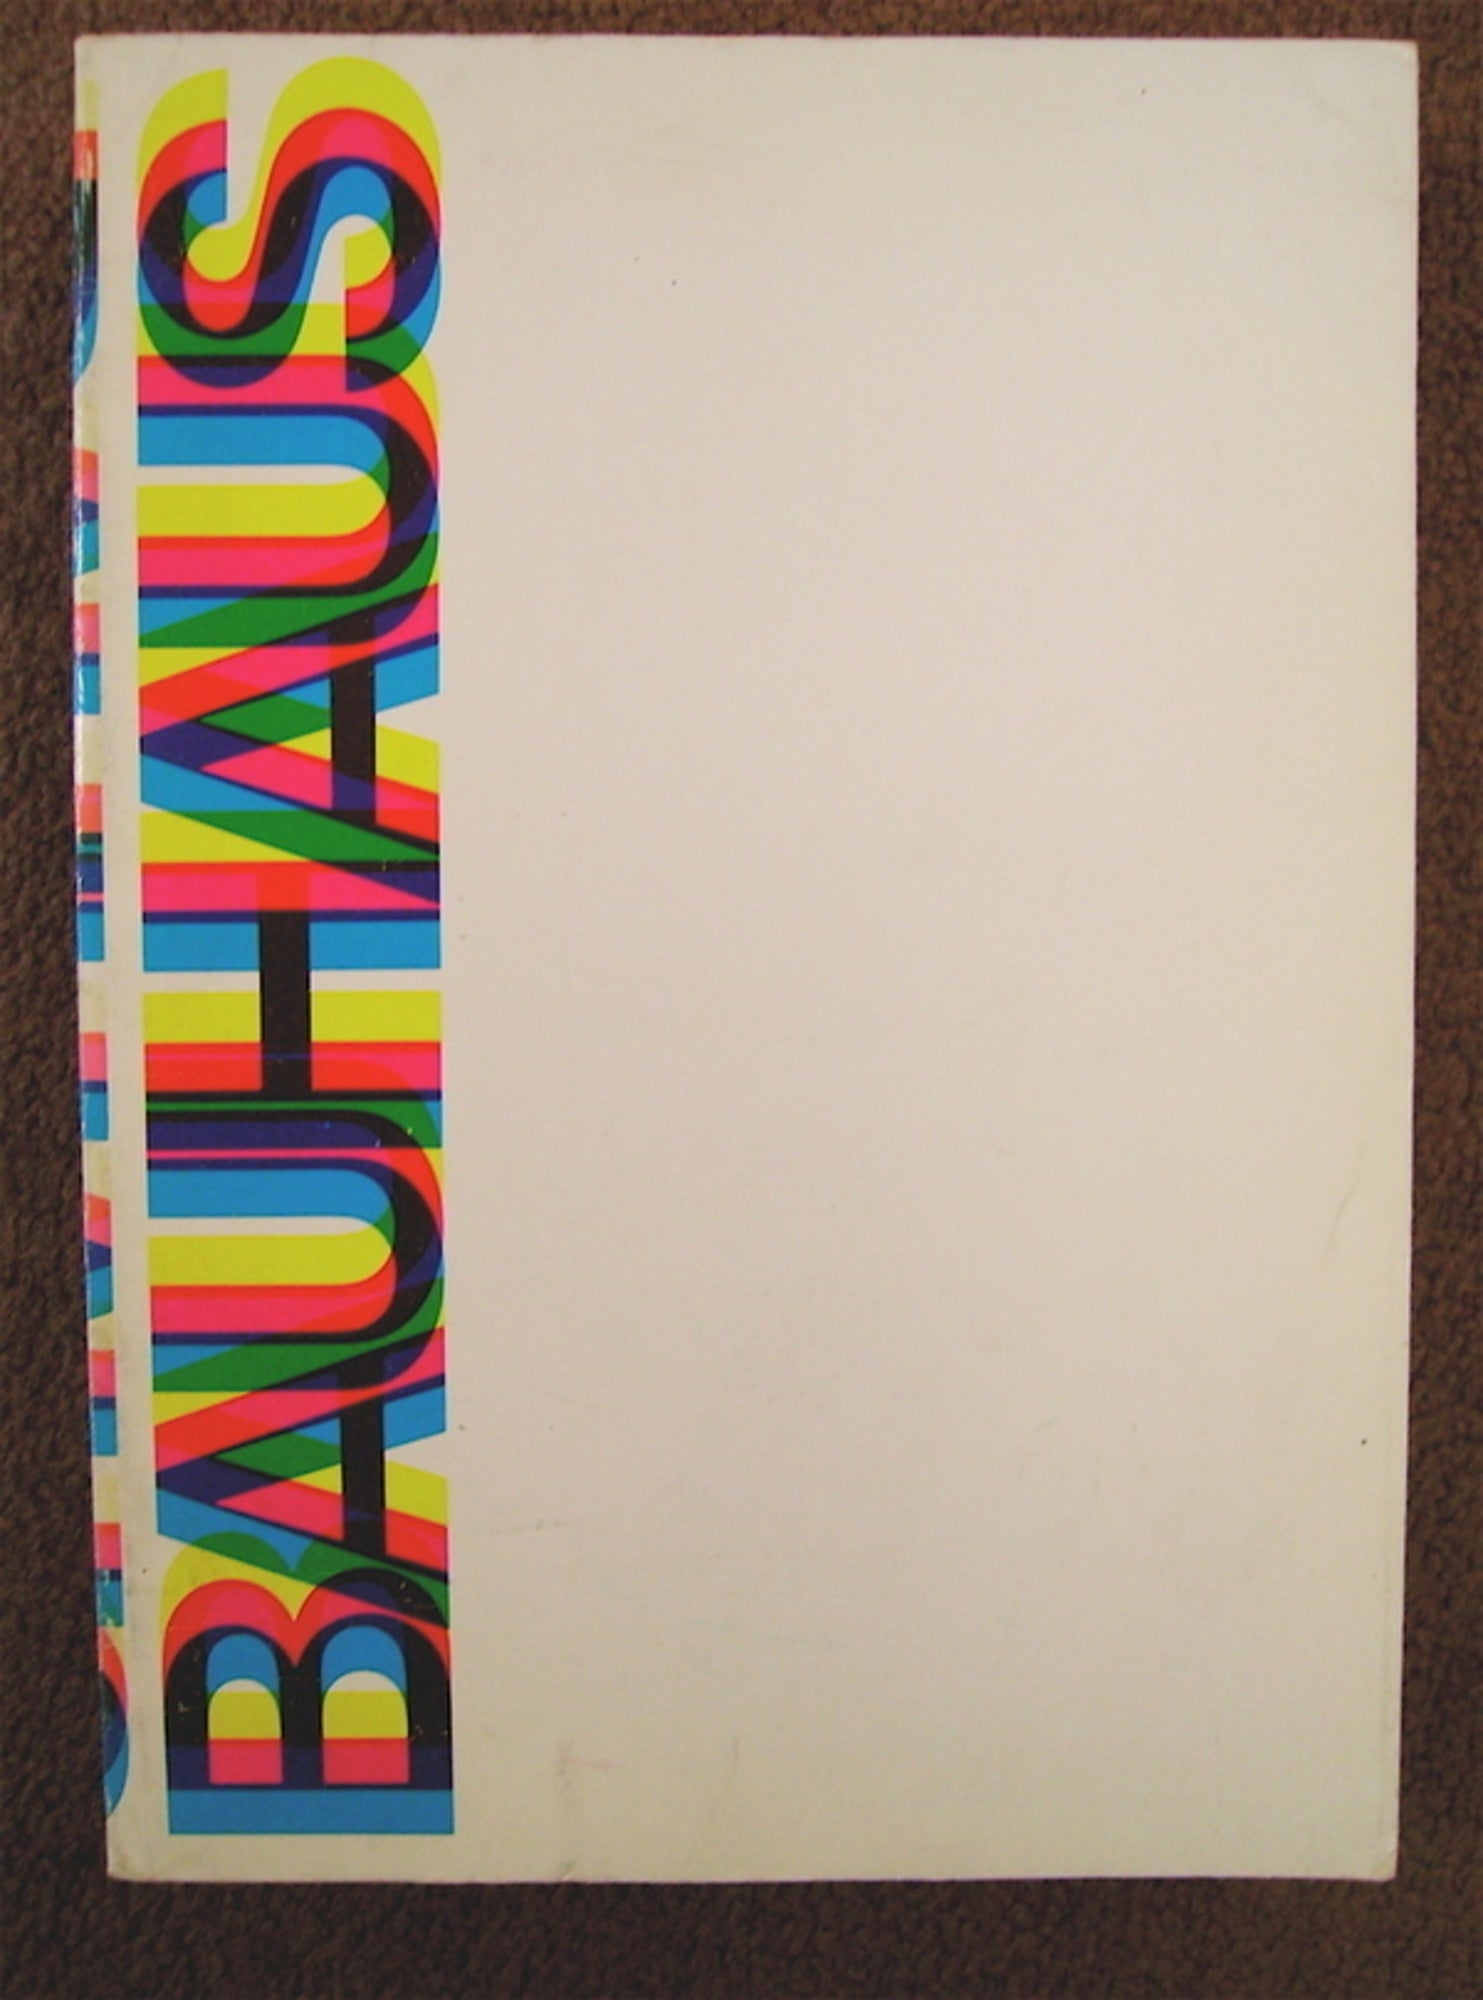 Bauhaus: Weimar, Dessau, Berlin, Chicago by Hans M. WINGLER on Bibliomania